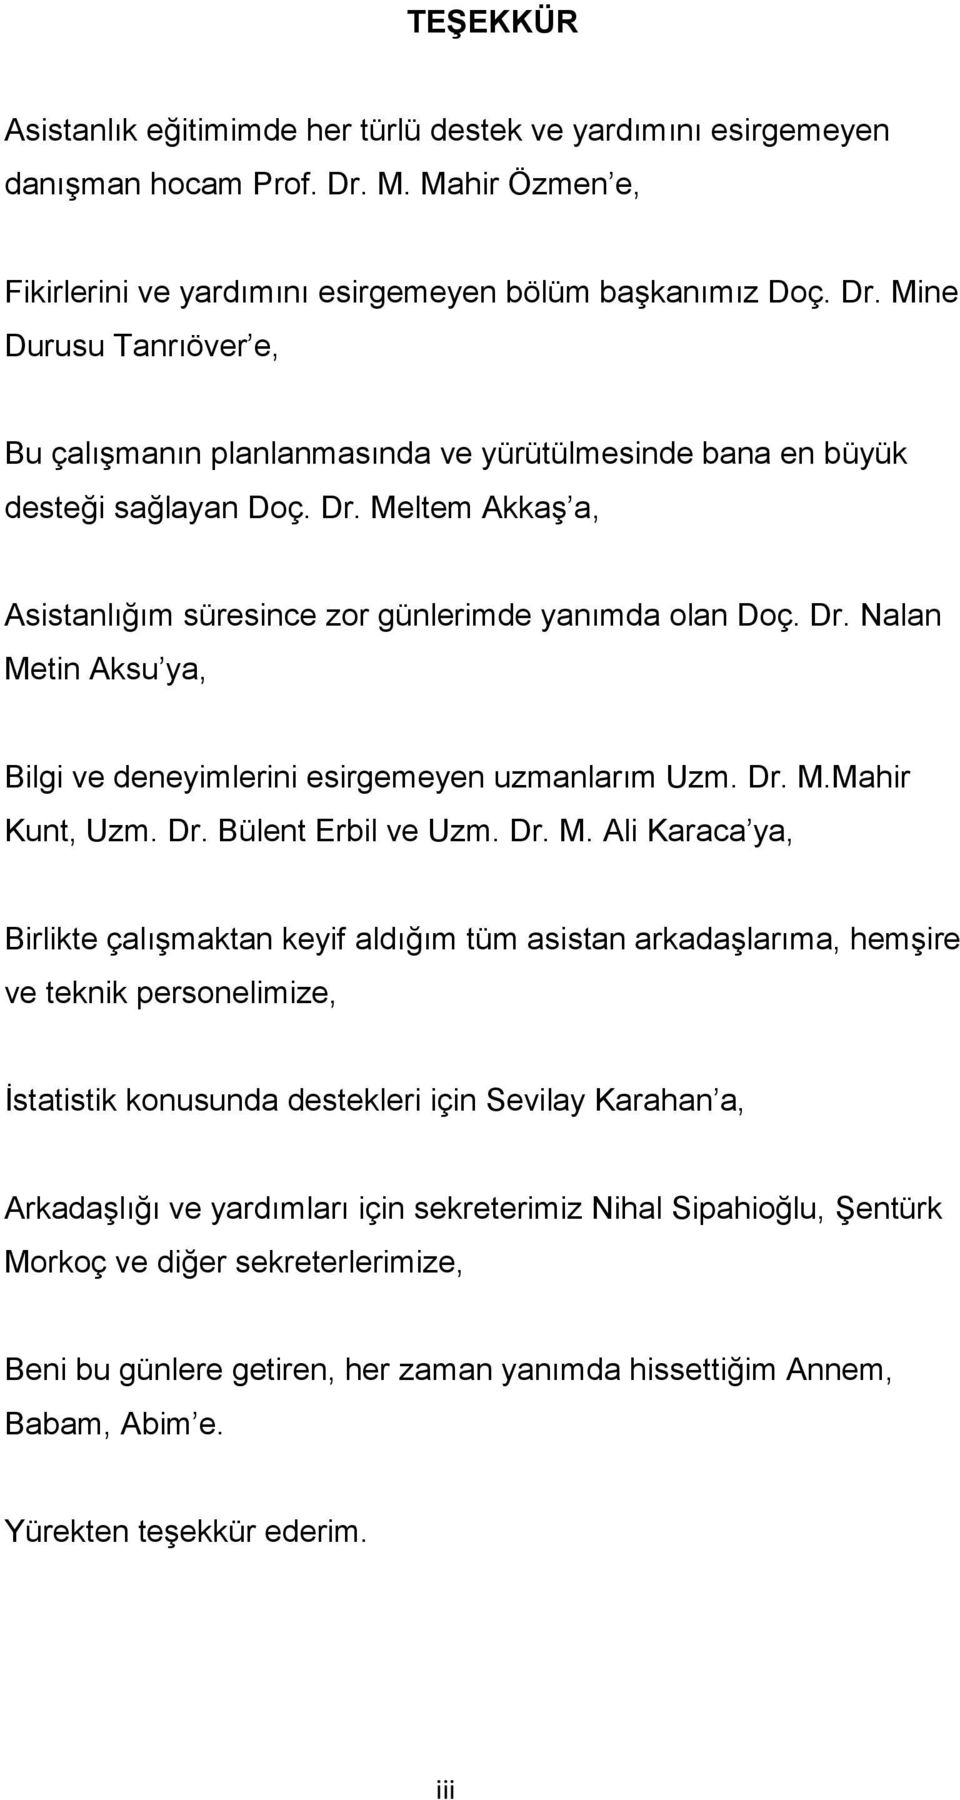 Dr. Nalan Me